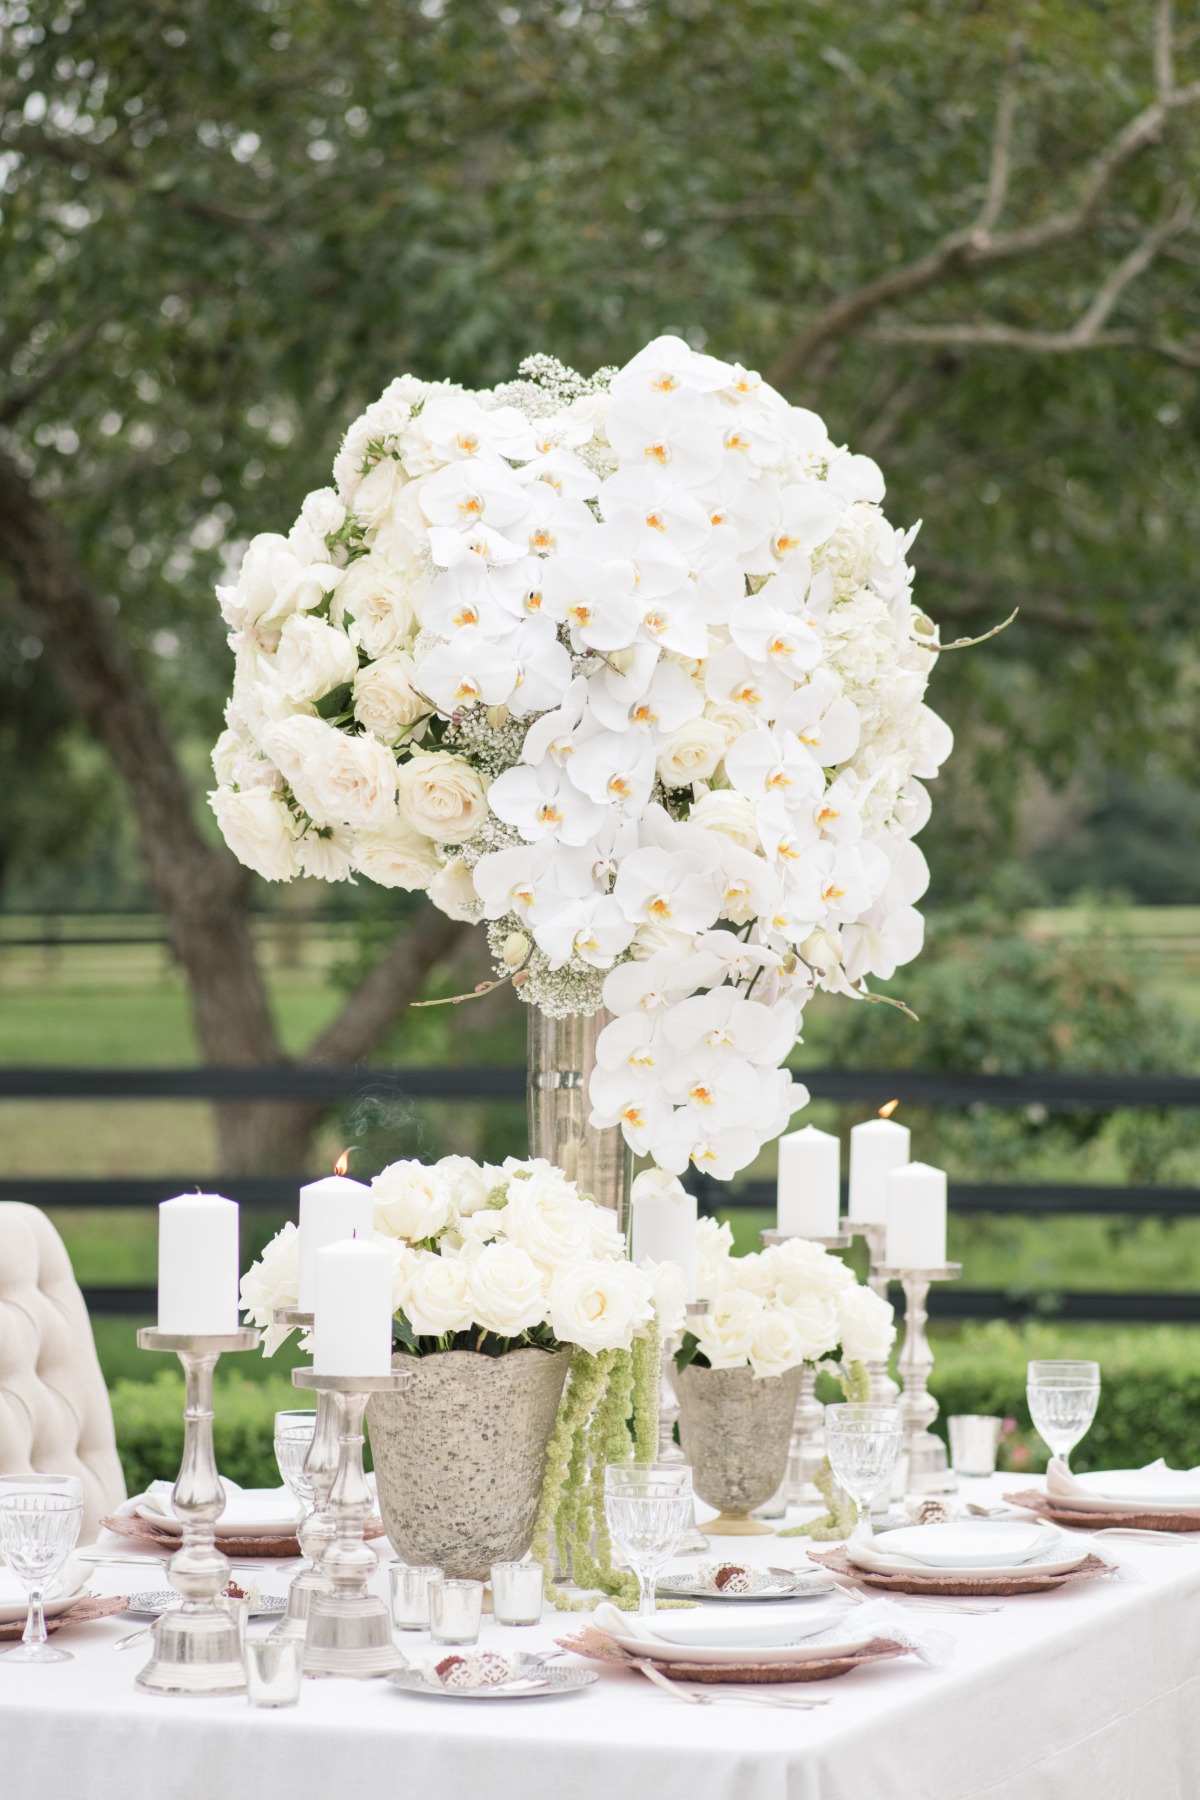 All-white wedding centerpiece